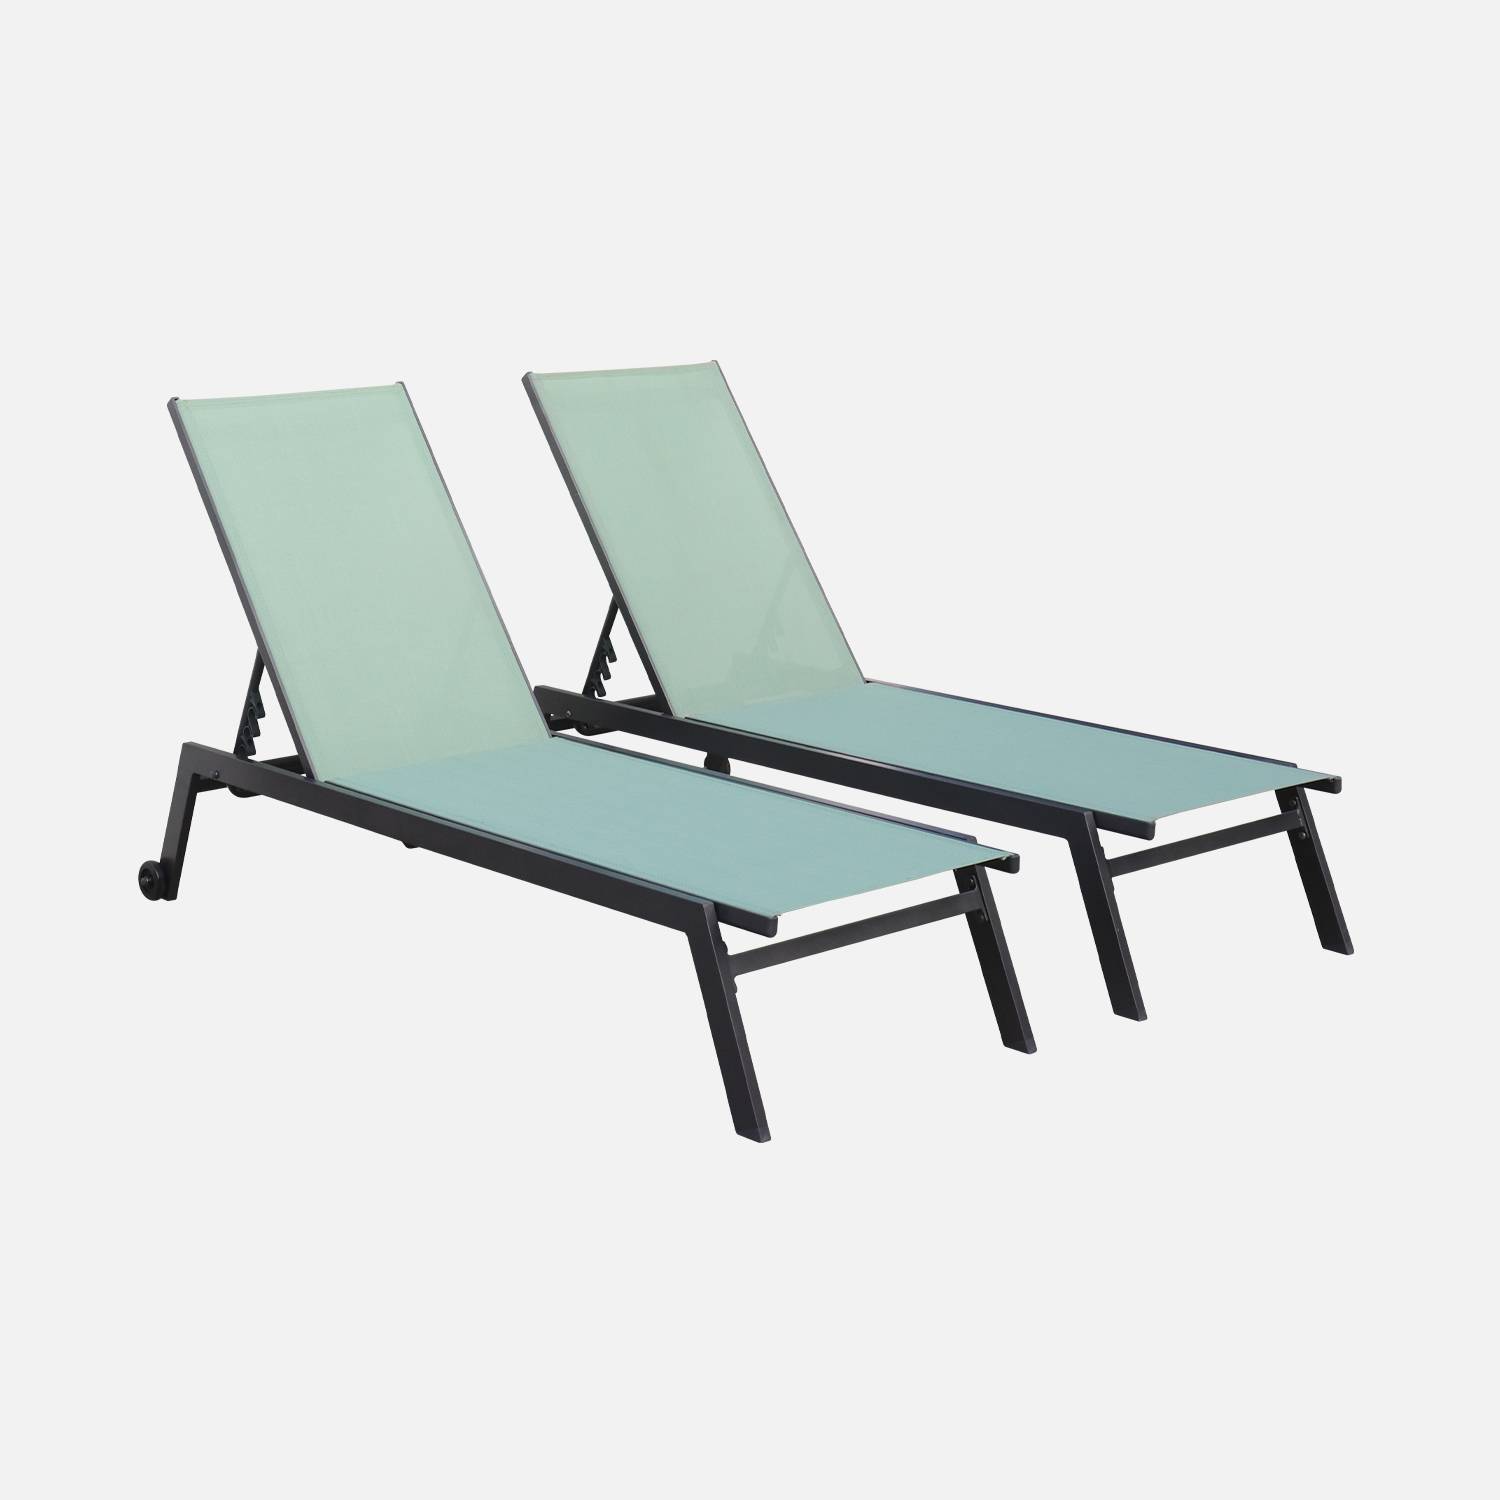 Set mit 2 ELSA Sonnenliegen aus anthrazitfarbenem Aluminium und Textilene in graugrün, Liegestühle mit mehreren Positionen und Rädern Photo2